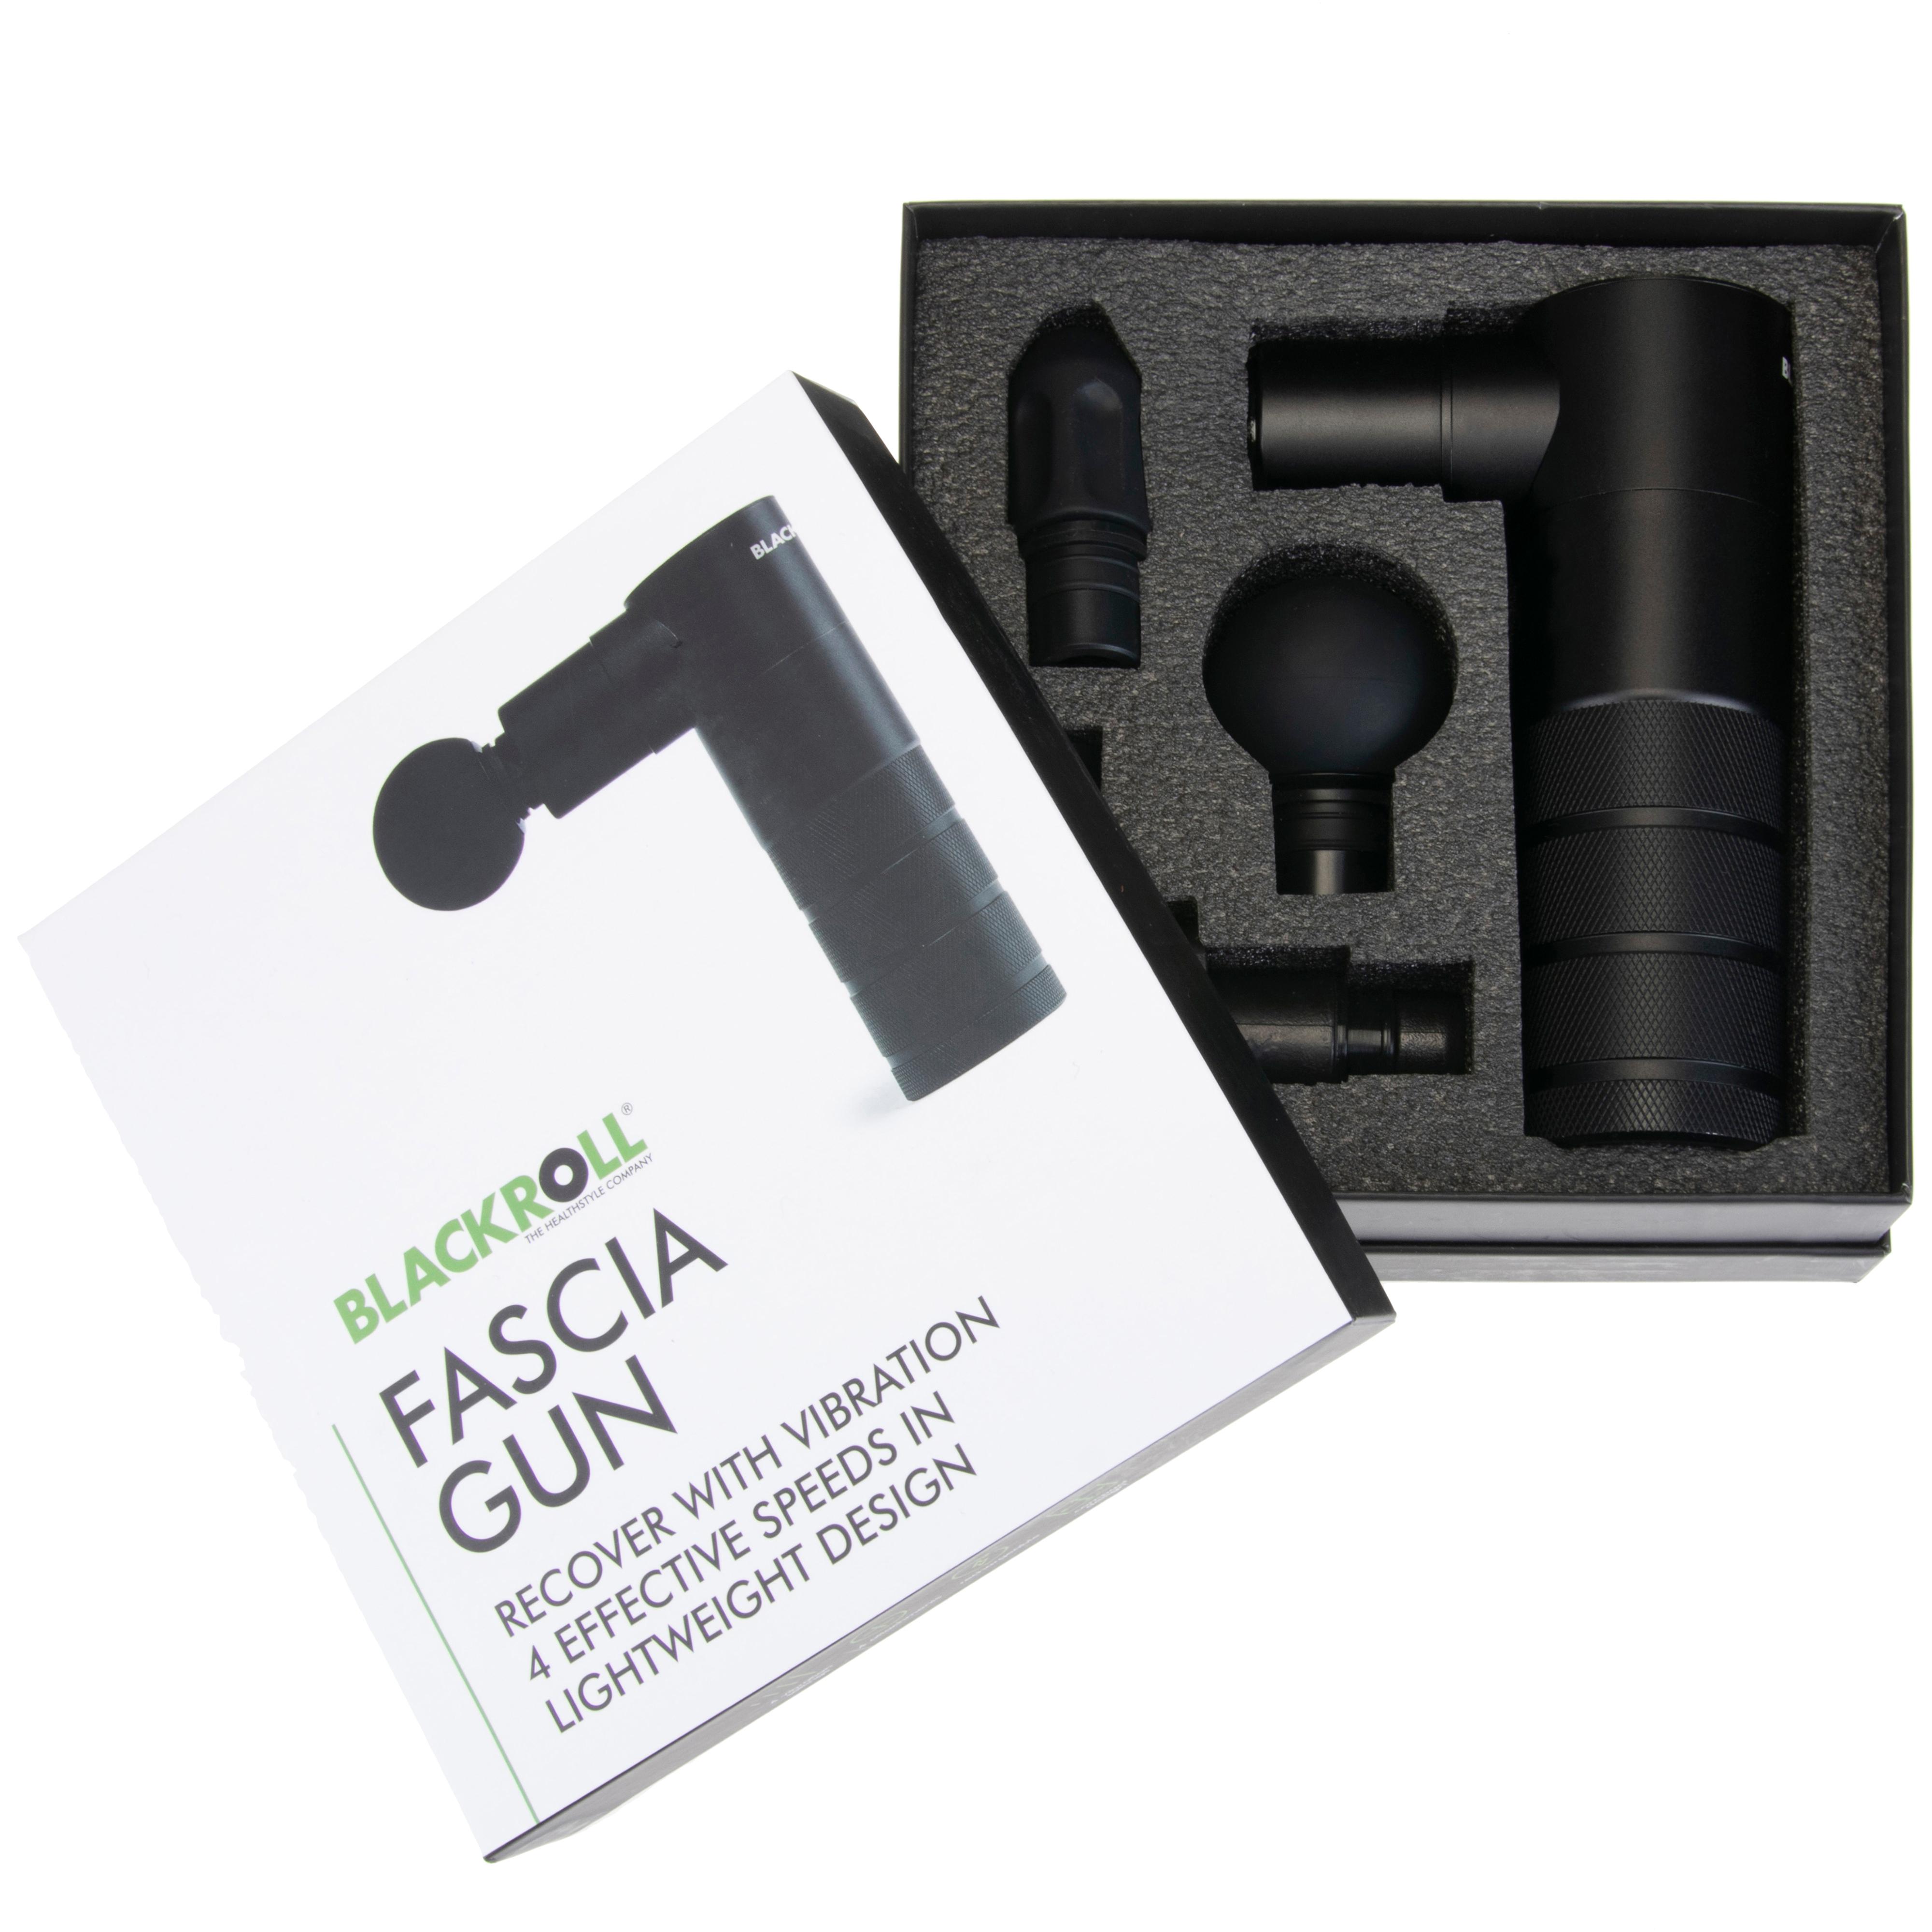 BLACKROLL Fascia Gun Fitnessgerät black im Online Shop von SportScheck  kaufen